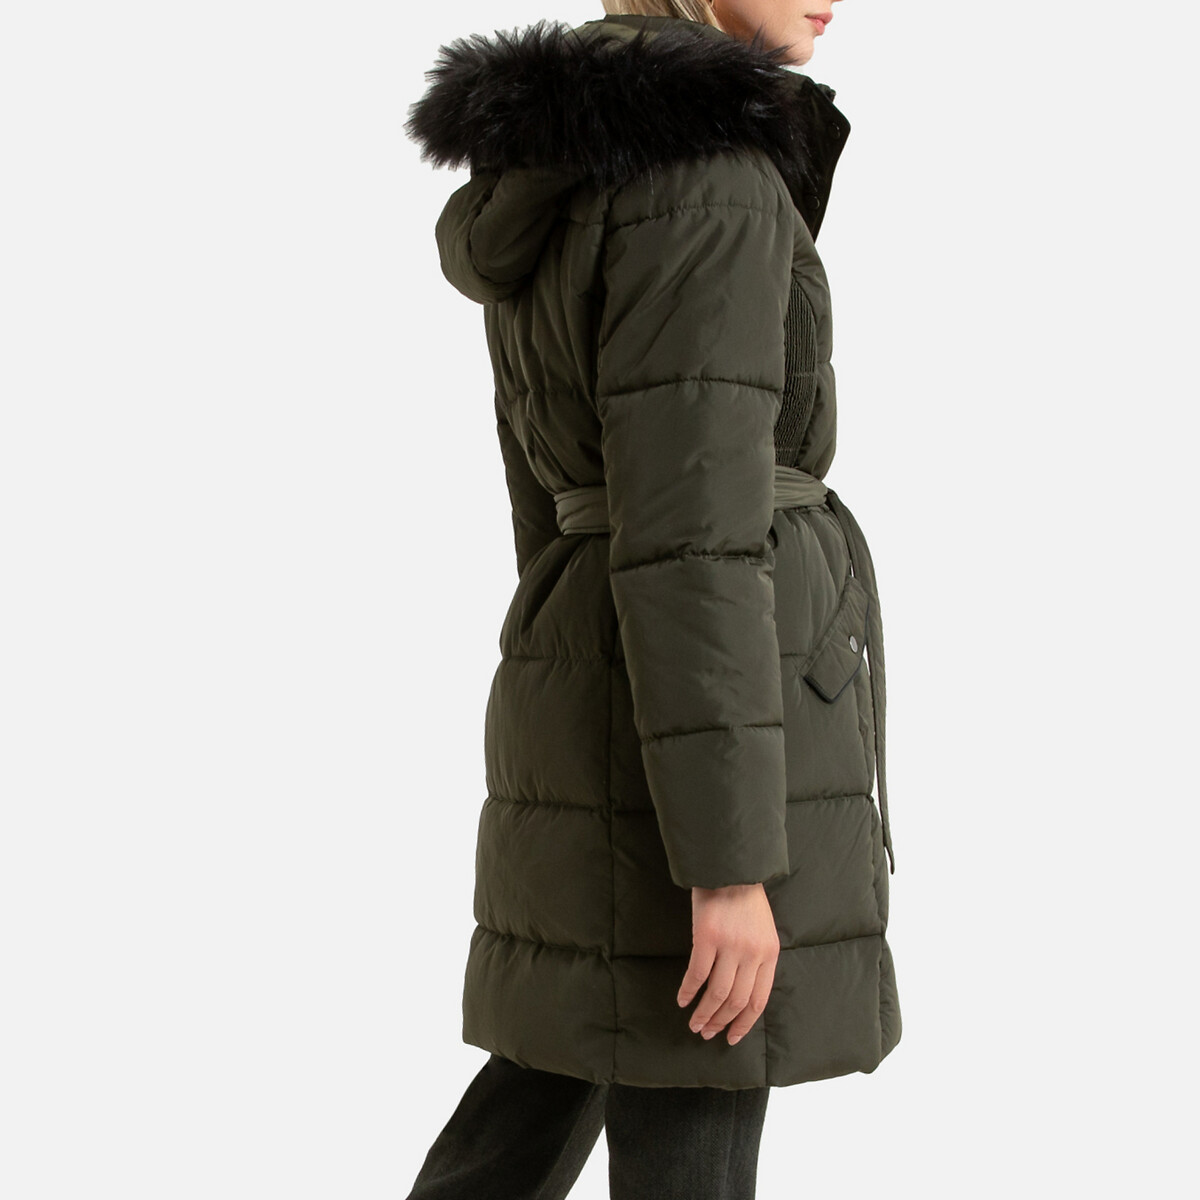 Куртка LaRedoute Стеганая средней длины с капюшоном зимняя модель 40 (FR) - 46 (RUS) зеленый, размер 40 (FR) - 46 (RUS) Стеганая средней длины с капюшоном зимняя модель 40 (FR) - 46 (RUS) зеленый - фото 4